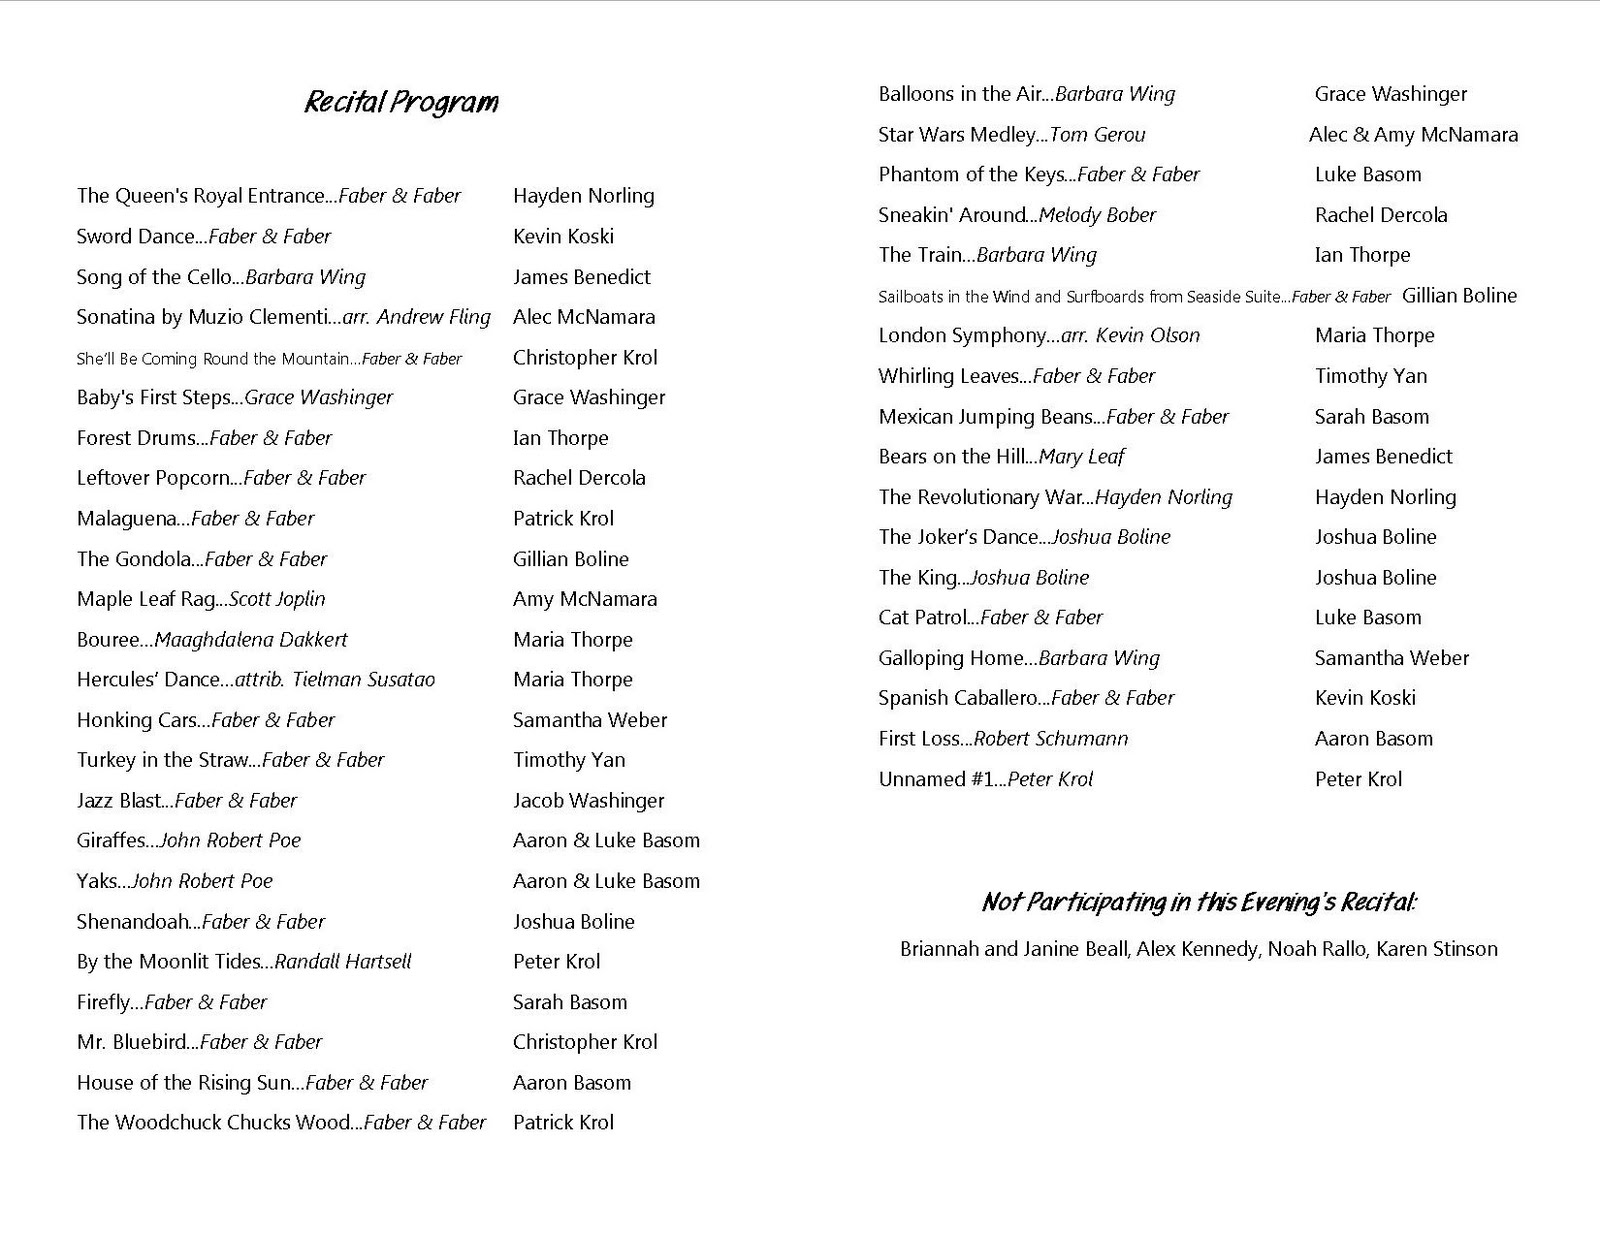 Piano Recital Program List